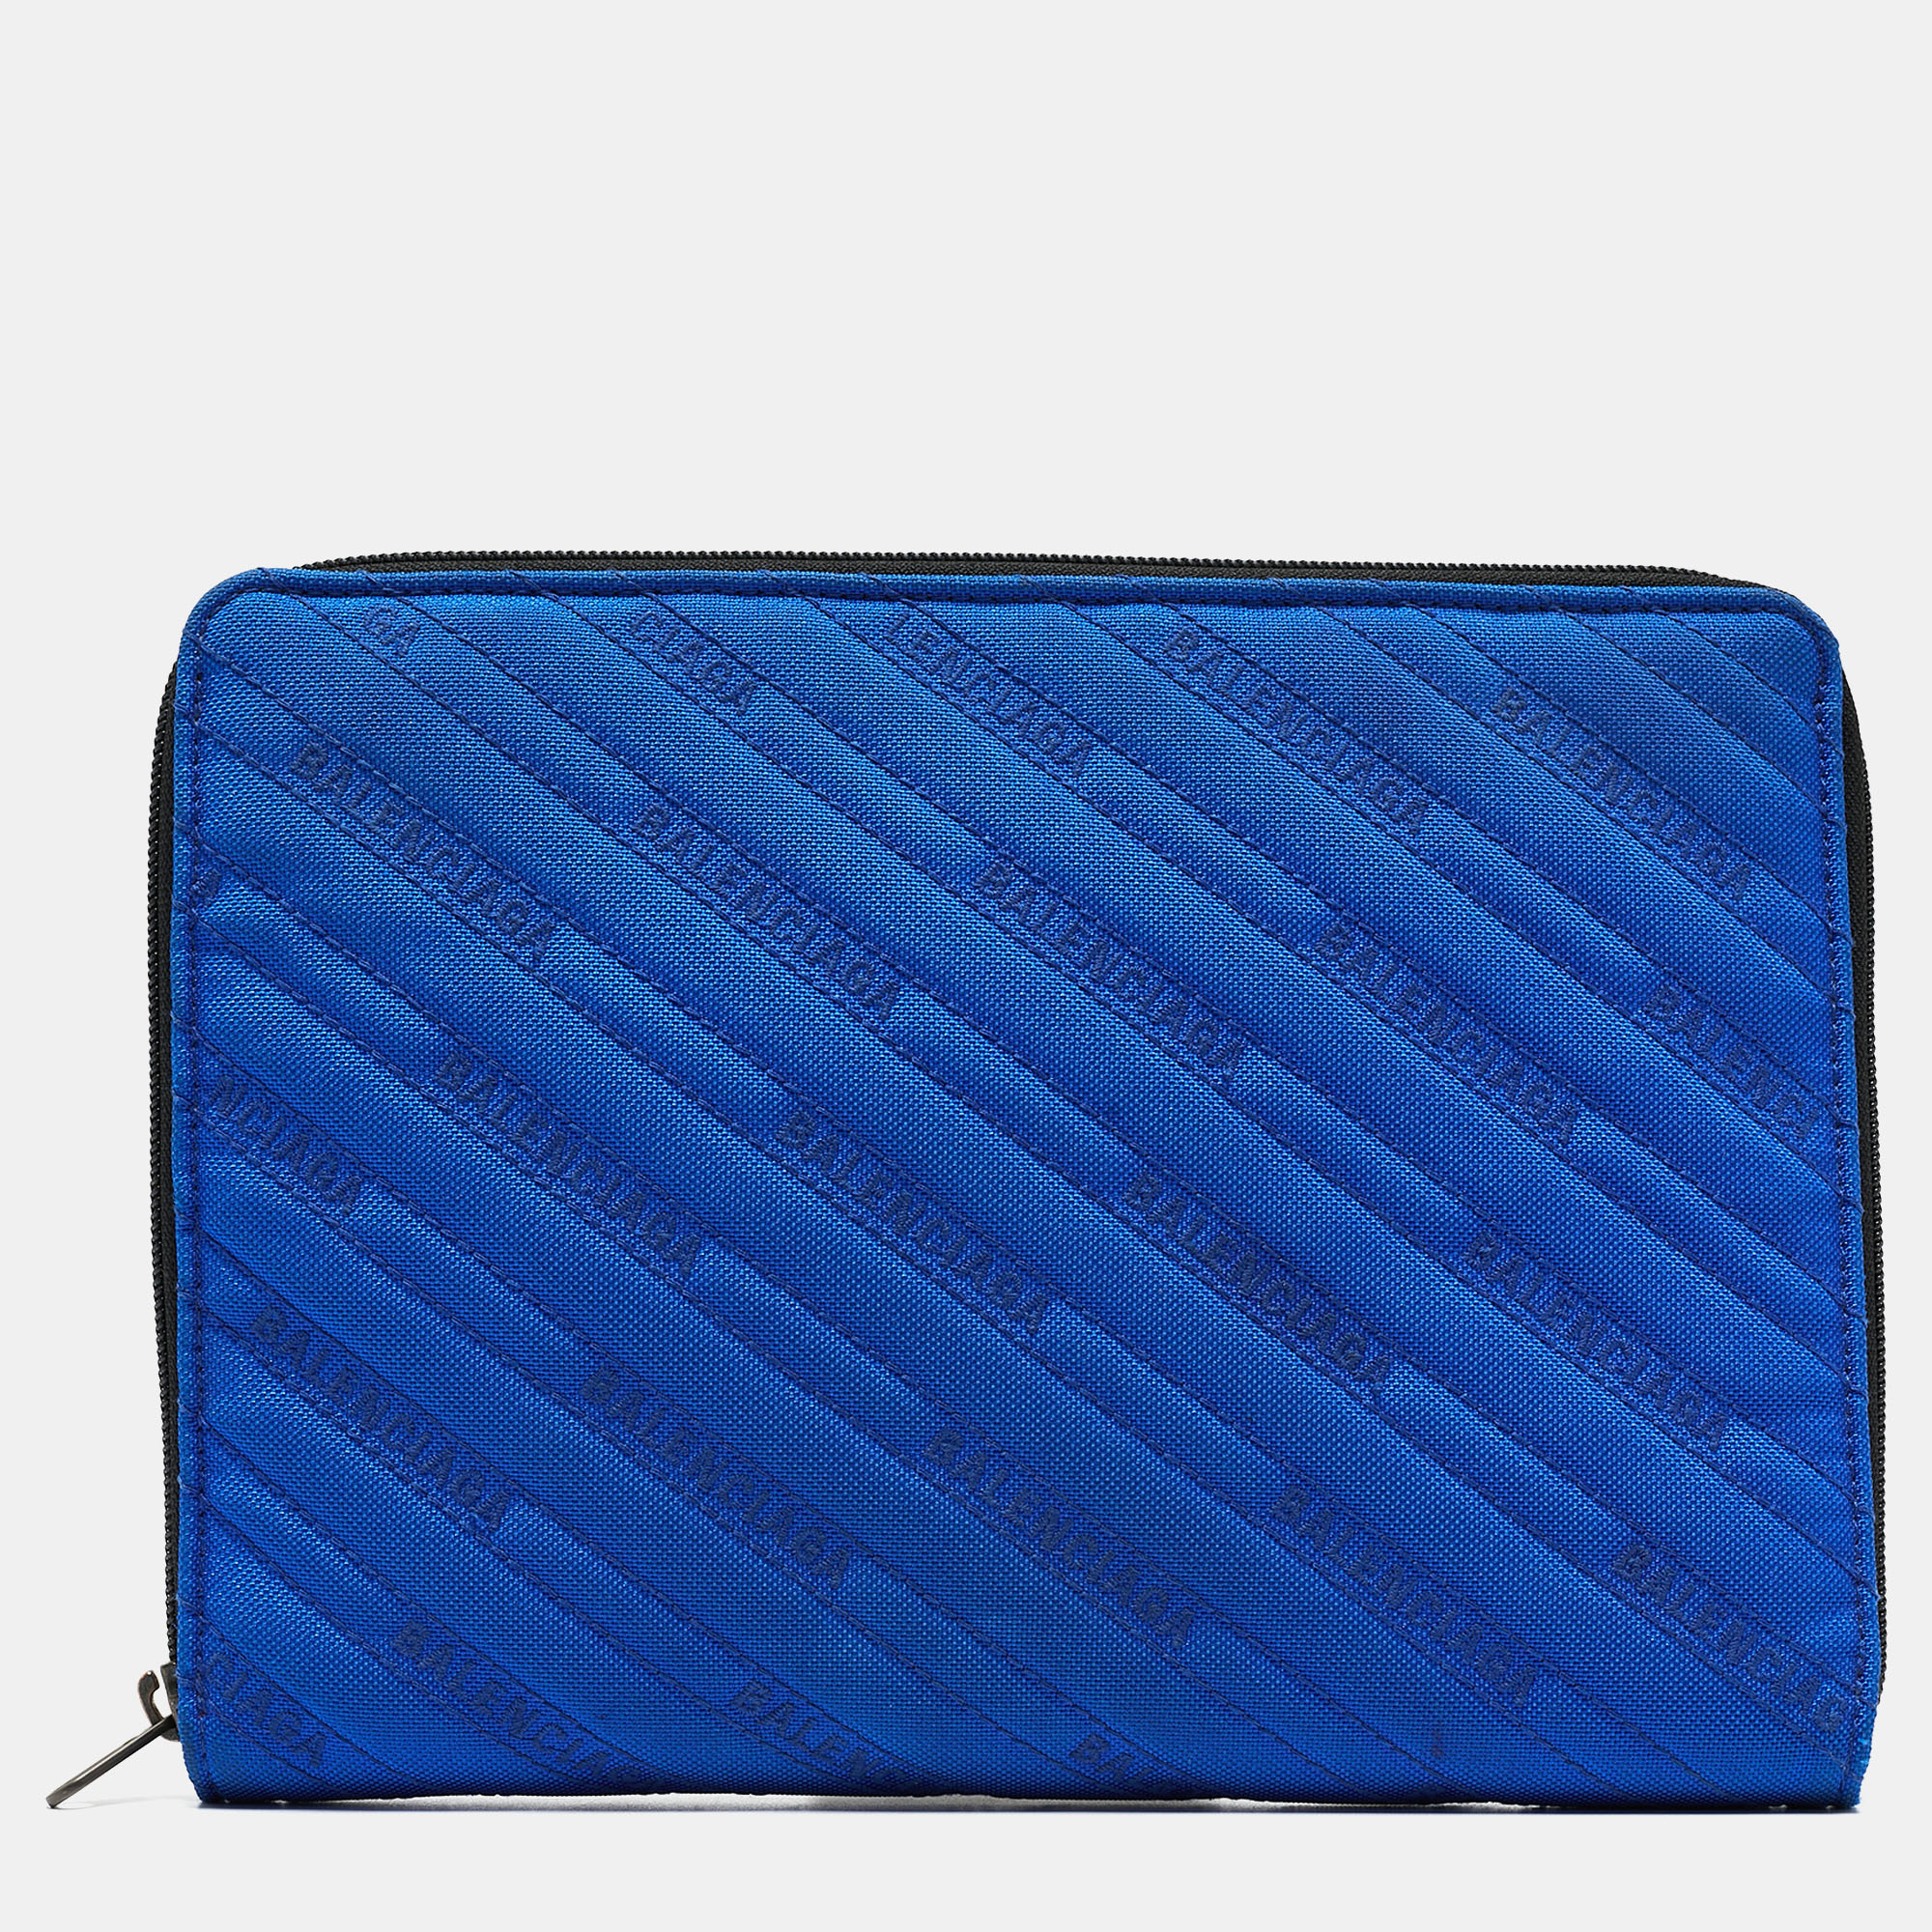 Balenciaga blue/black logo nylon ipad case